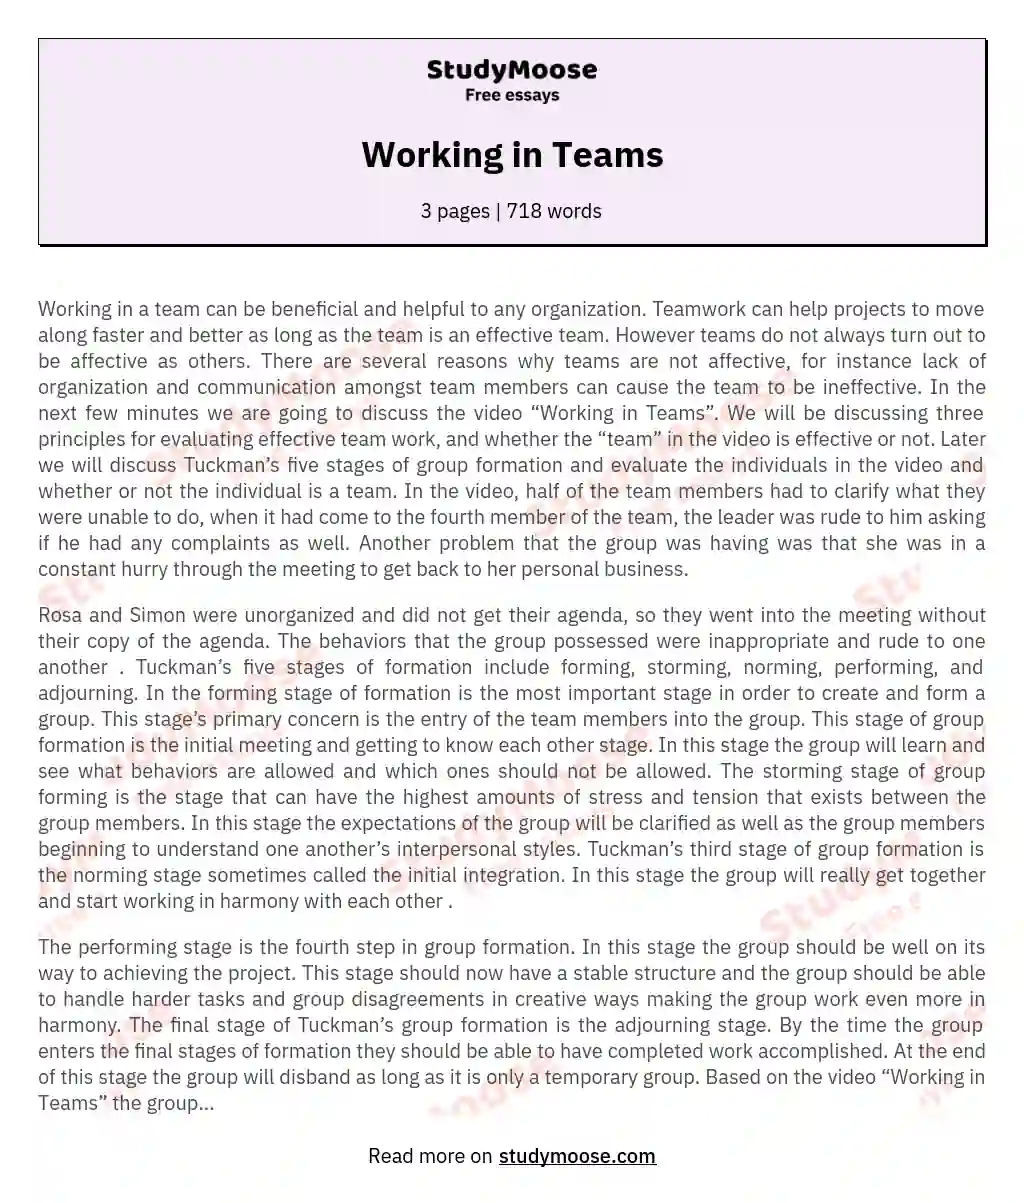 Working in Teams essay